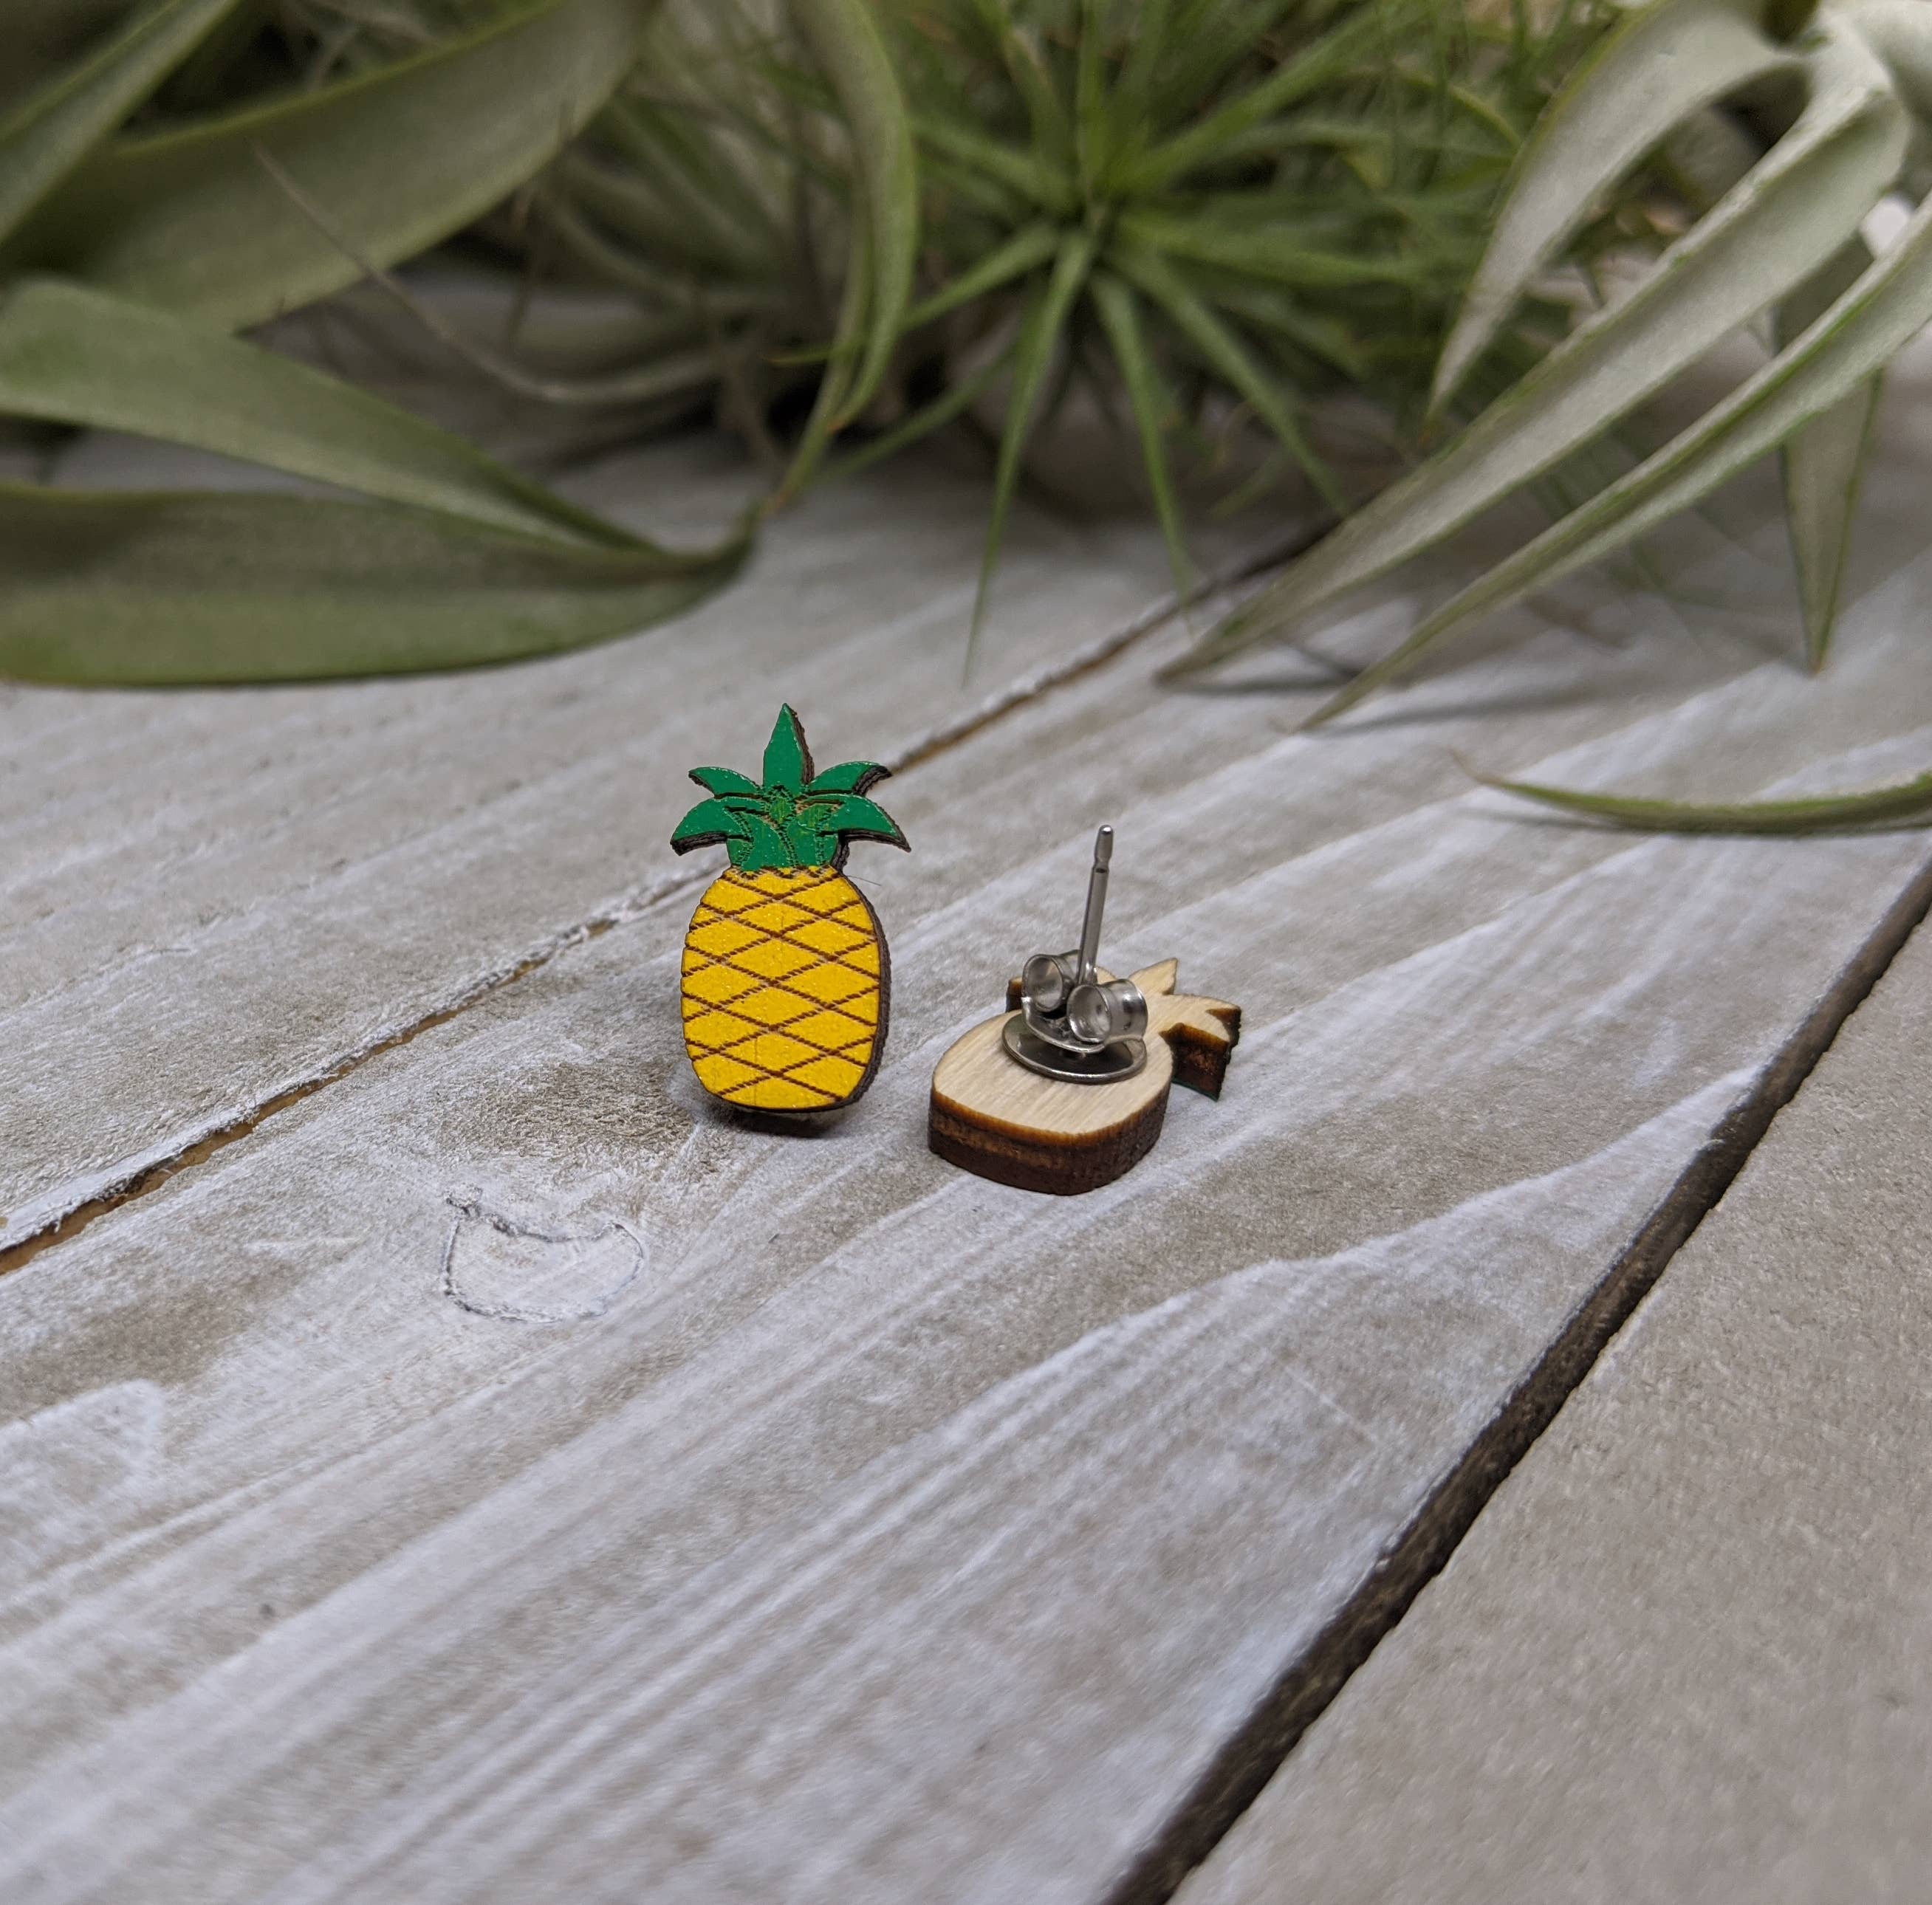 pineapple earrings